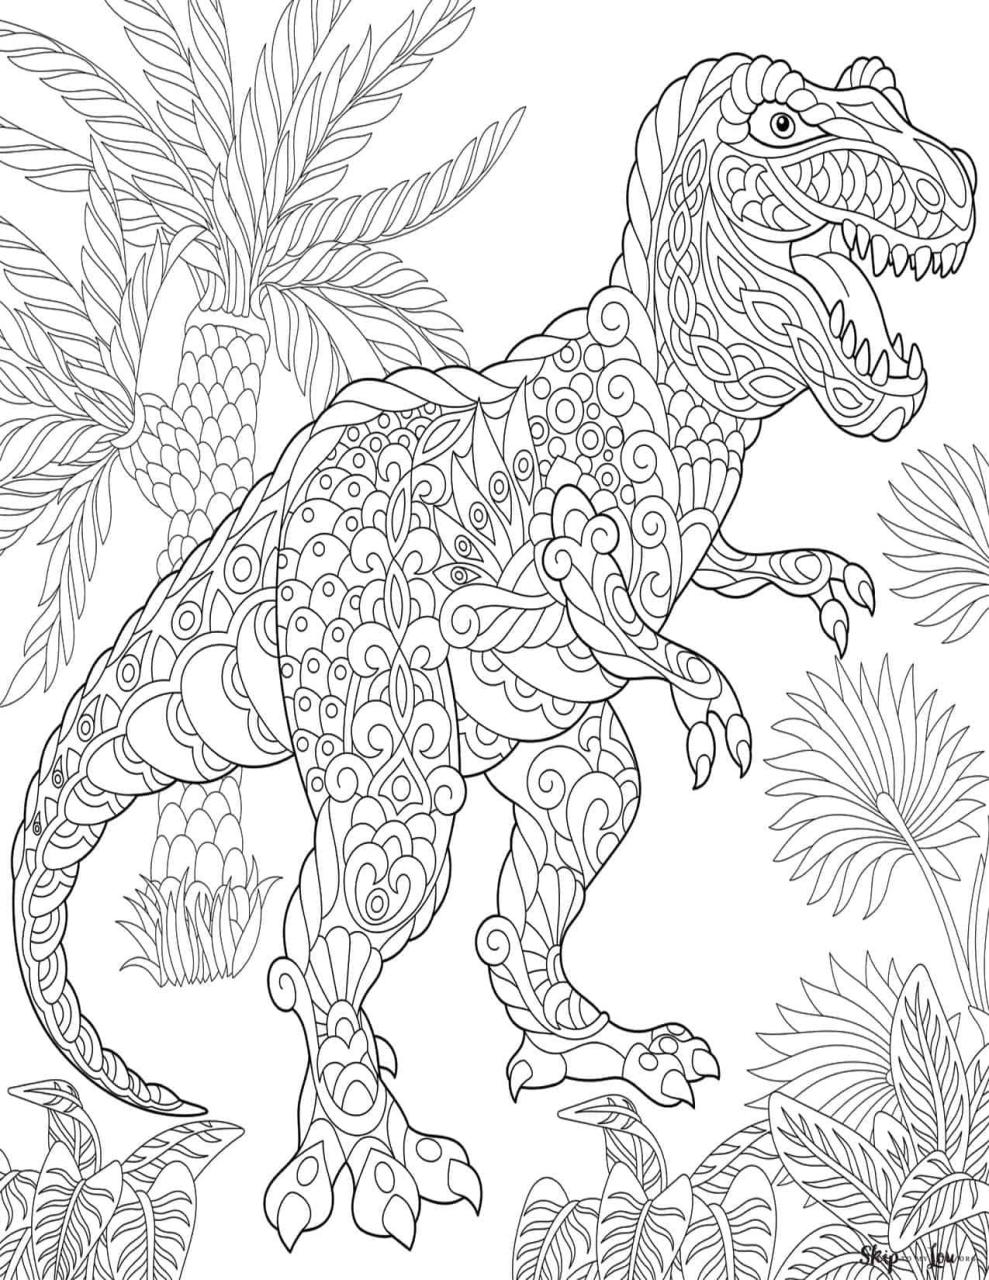 Dinosaur Coloring Pages Dinosaur coloring pages, Dinosaur coloring